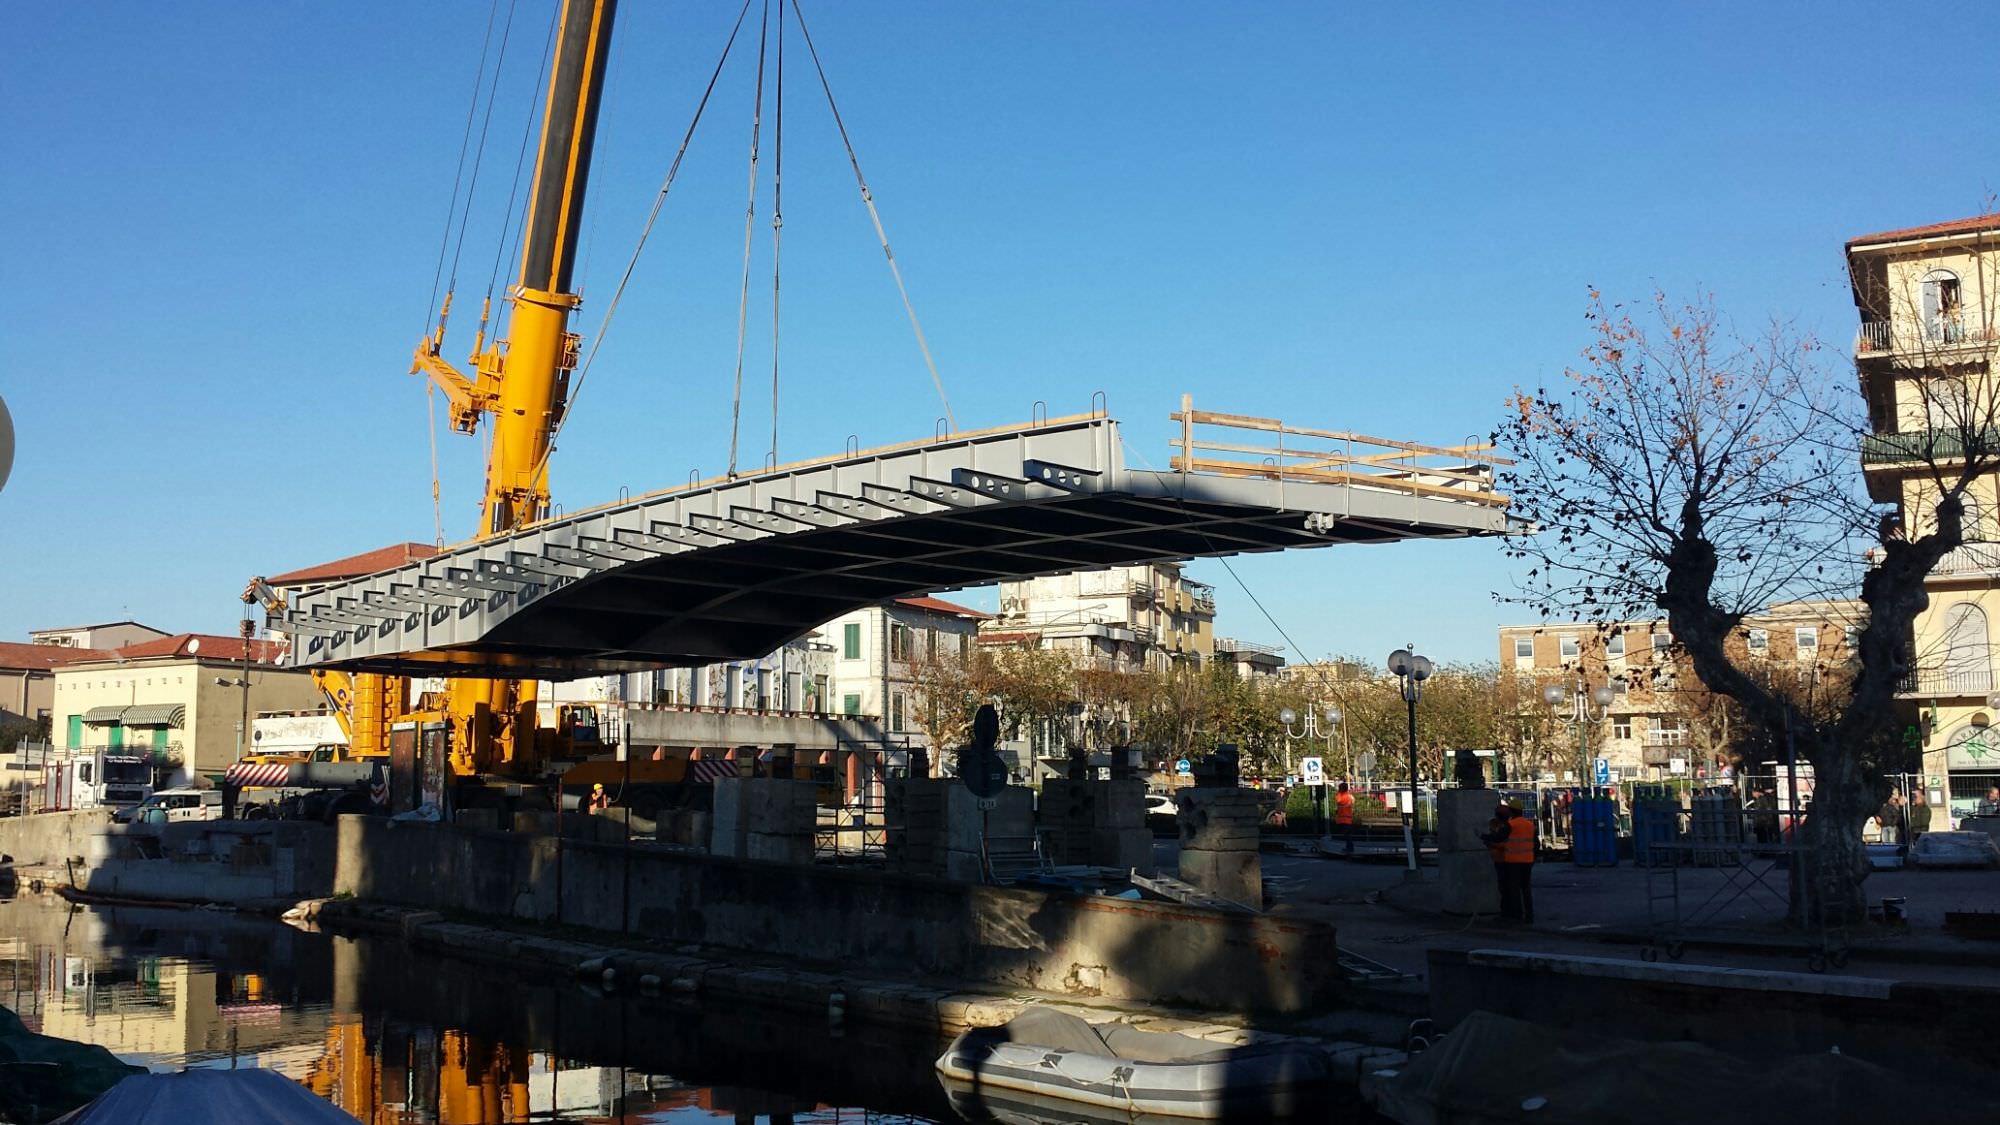 La ditta costruttrice collauda il ponte girante, inaugurazione a fine febbraio 2015?